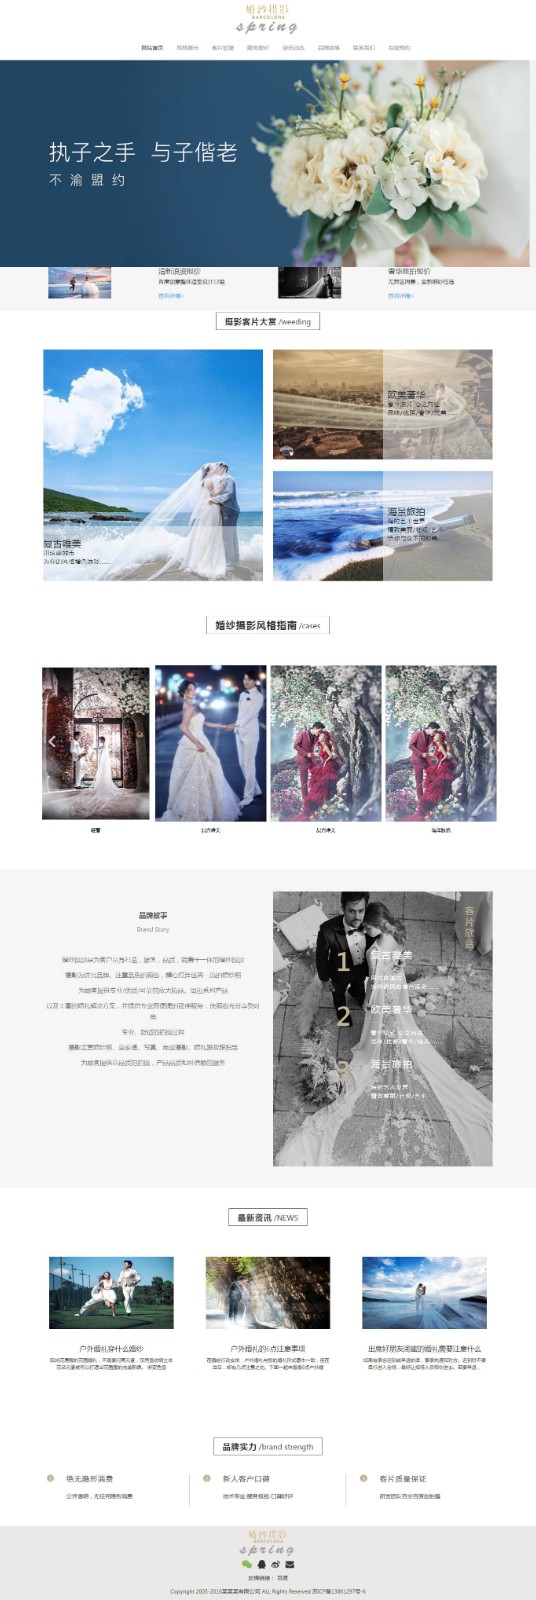 婚紗攝影網站建設